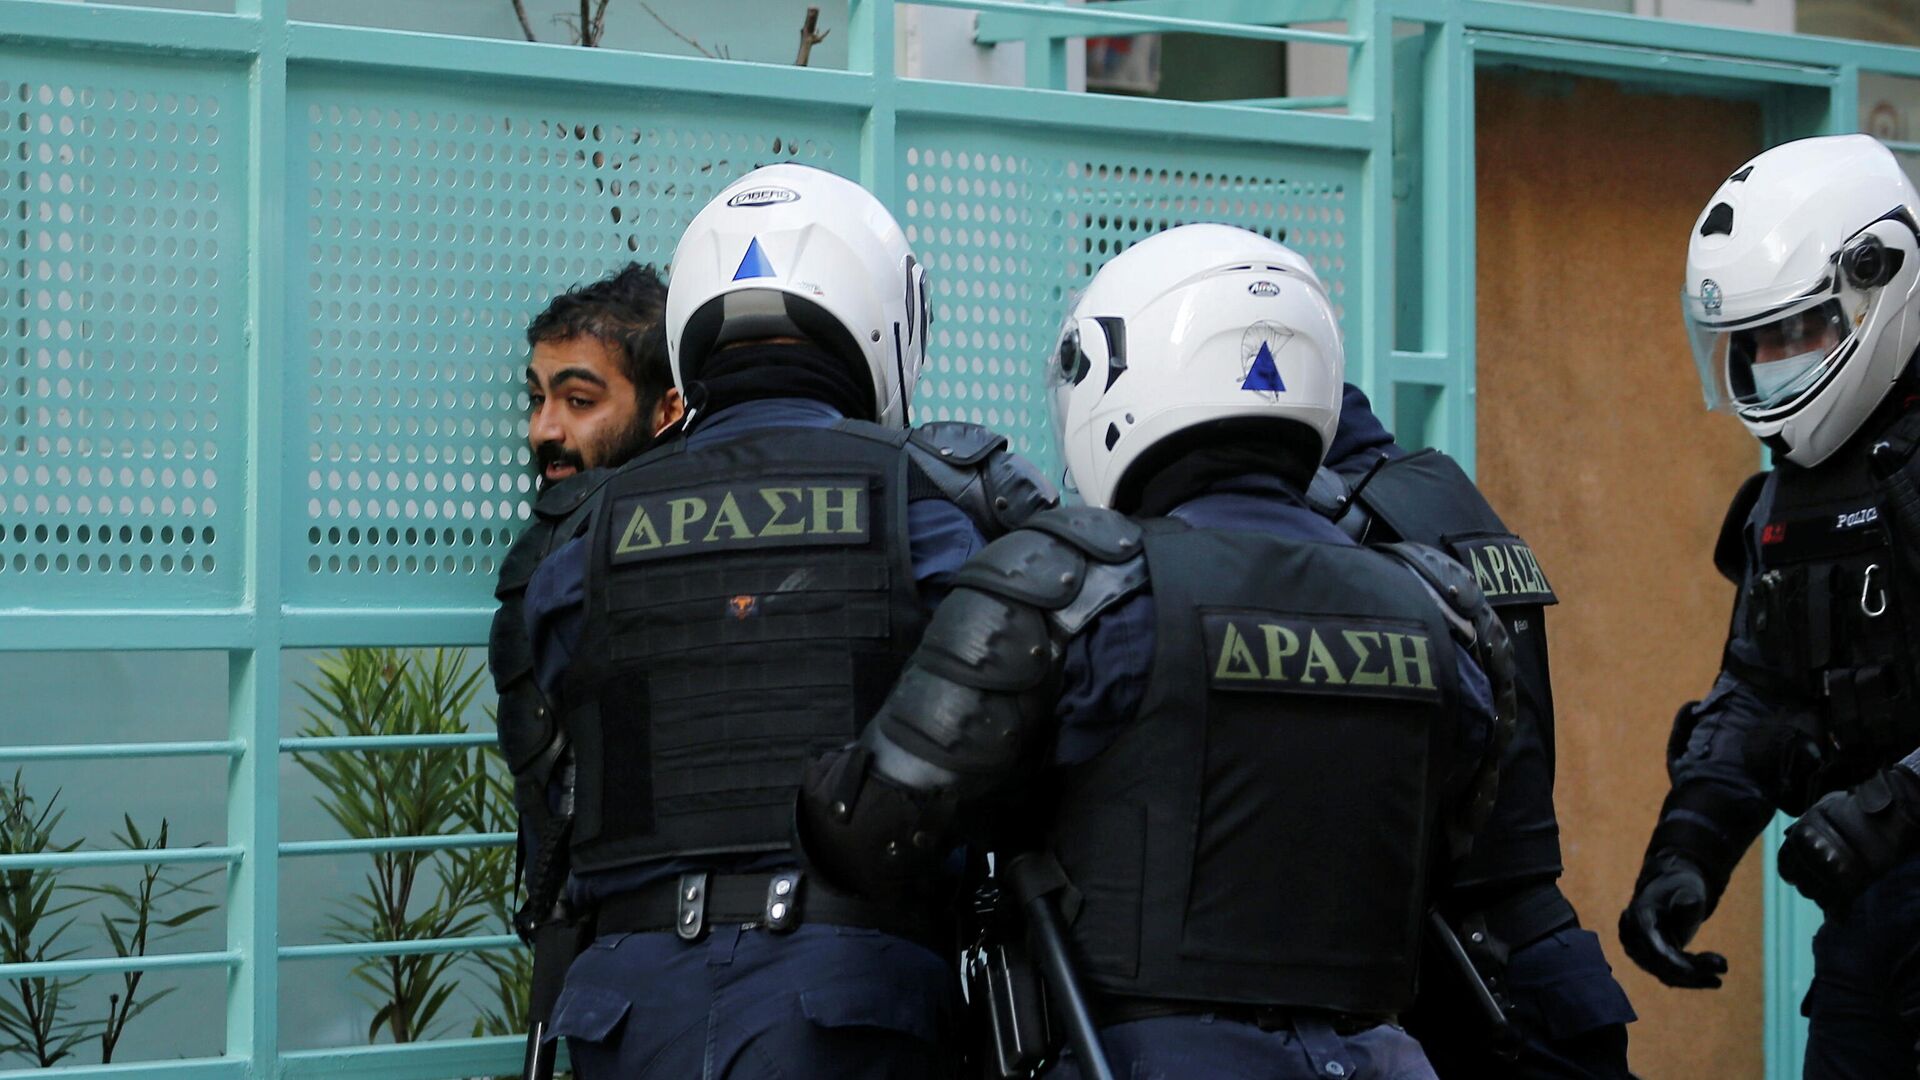  Сотрудники полиции задерживают участника акции протеста в Афинах, Греция, 6 декабря 2020 - РИА Новости, 1920, 06.12.2020